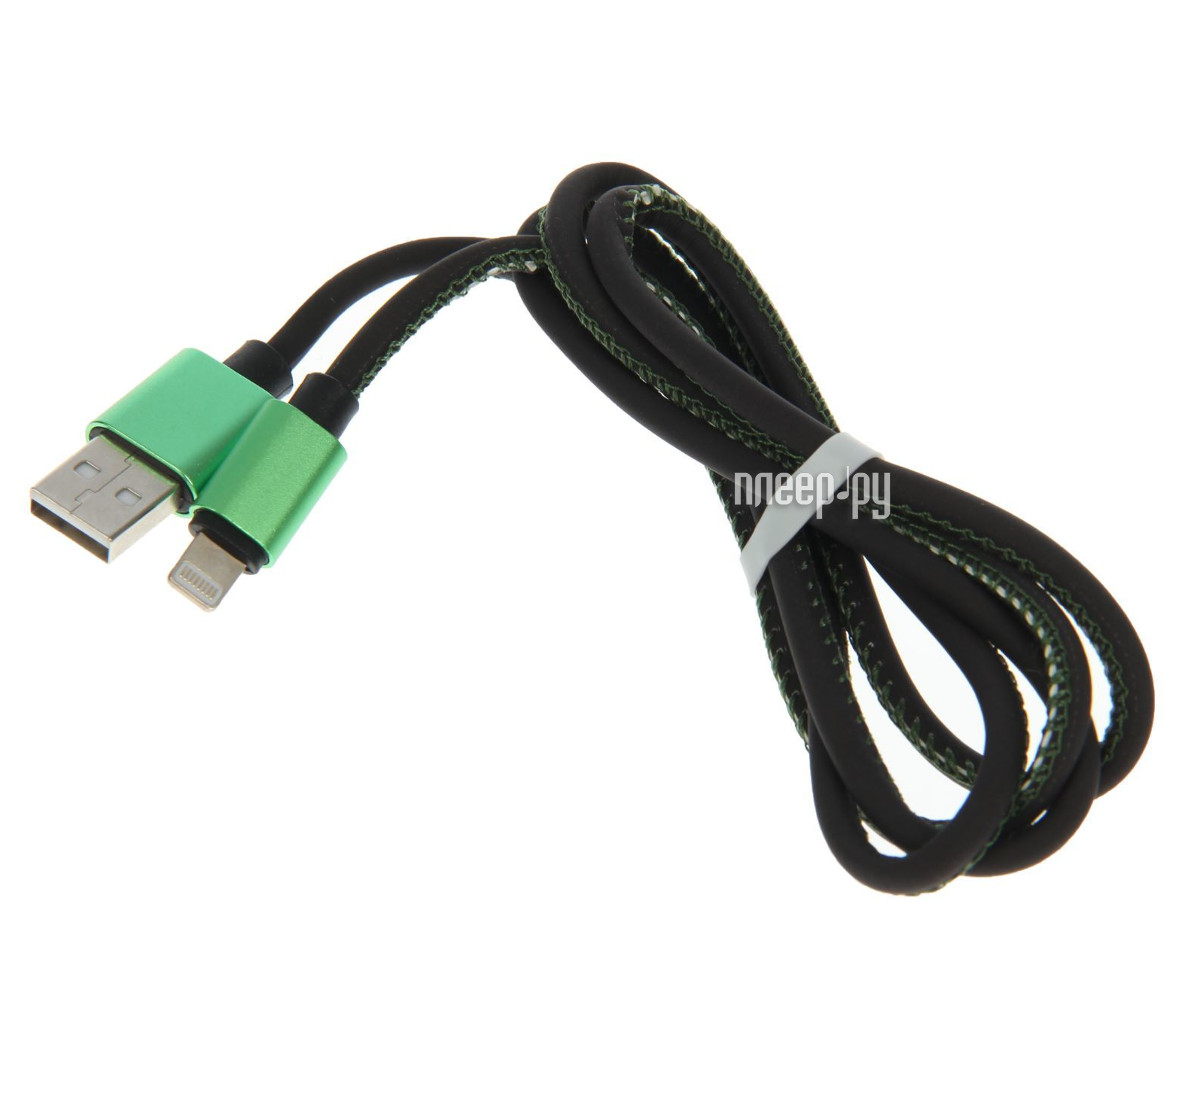  Luazon USB - Lightning Green 2541703  340 